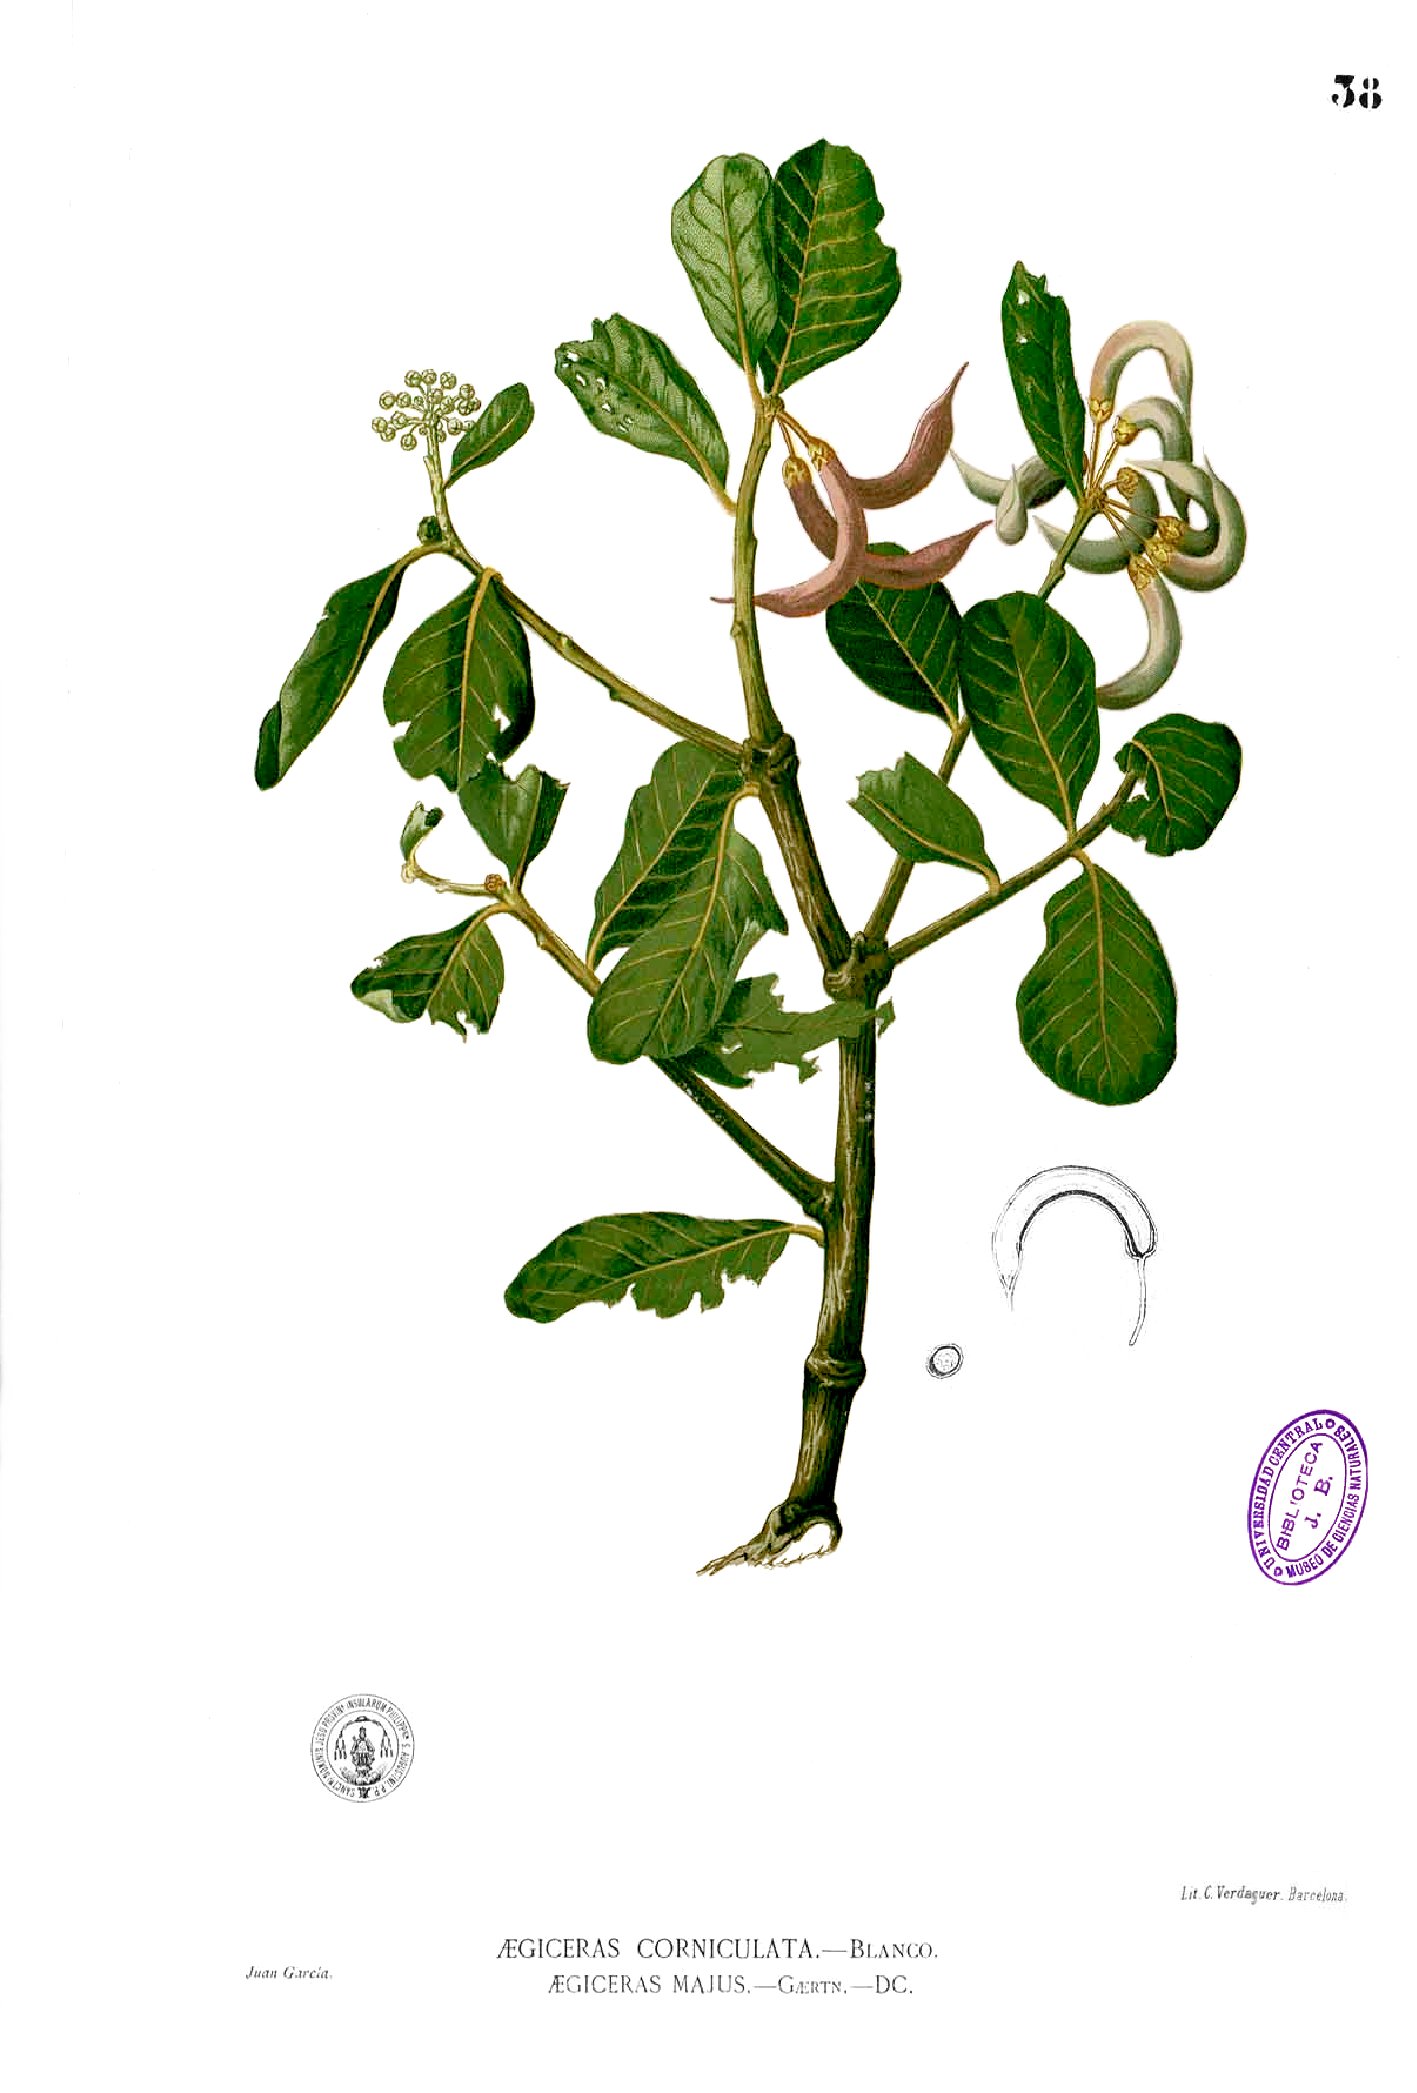 Aegiceras corniculatum Blanco1.38